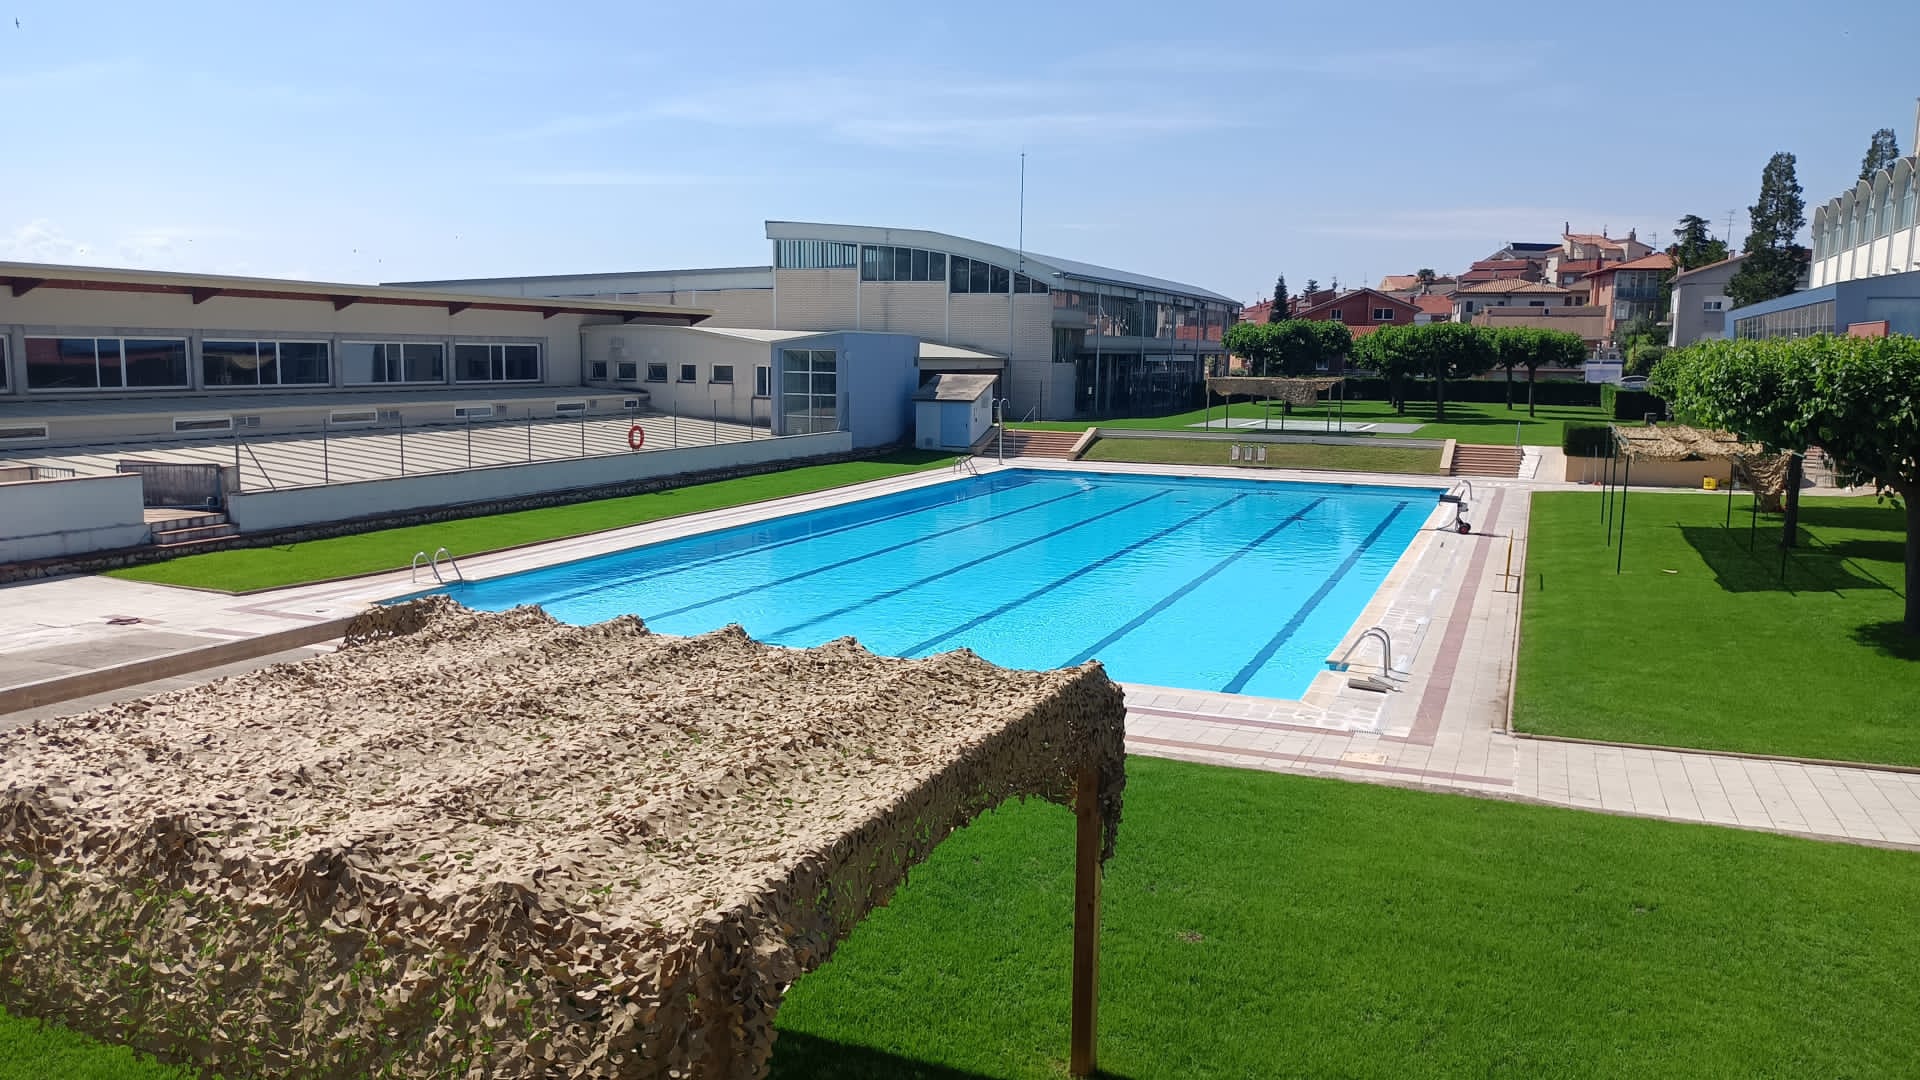 Berga iniciarà la temporada estival el 17 de juny amb l'obertura de les piscines municipals i una vetllada musical 